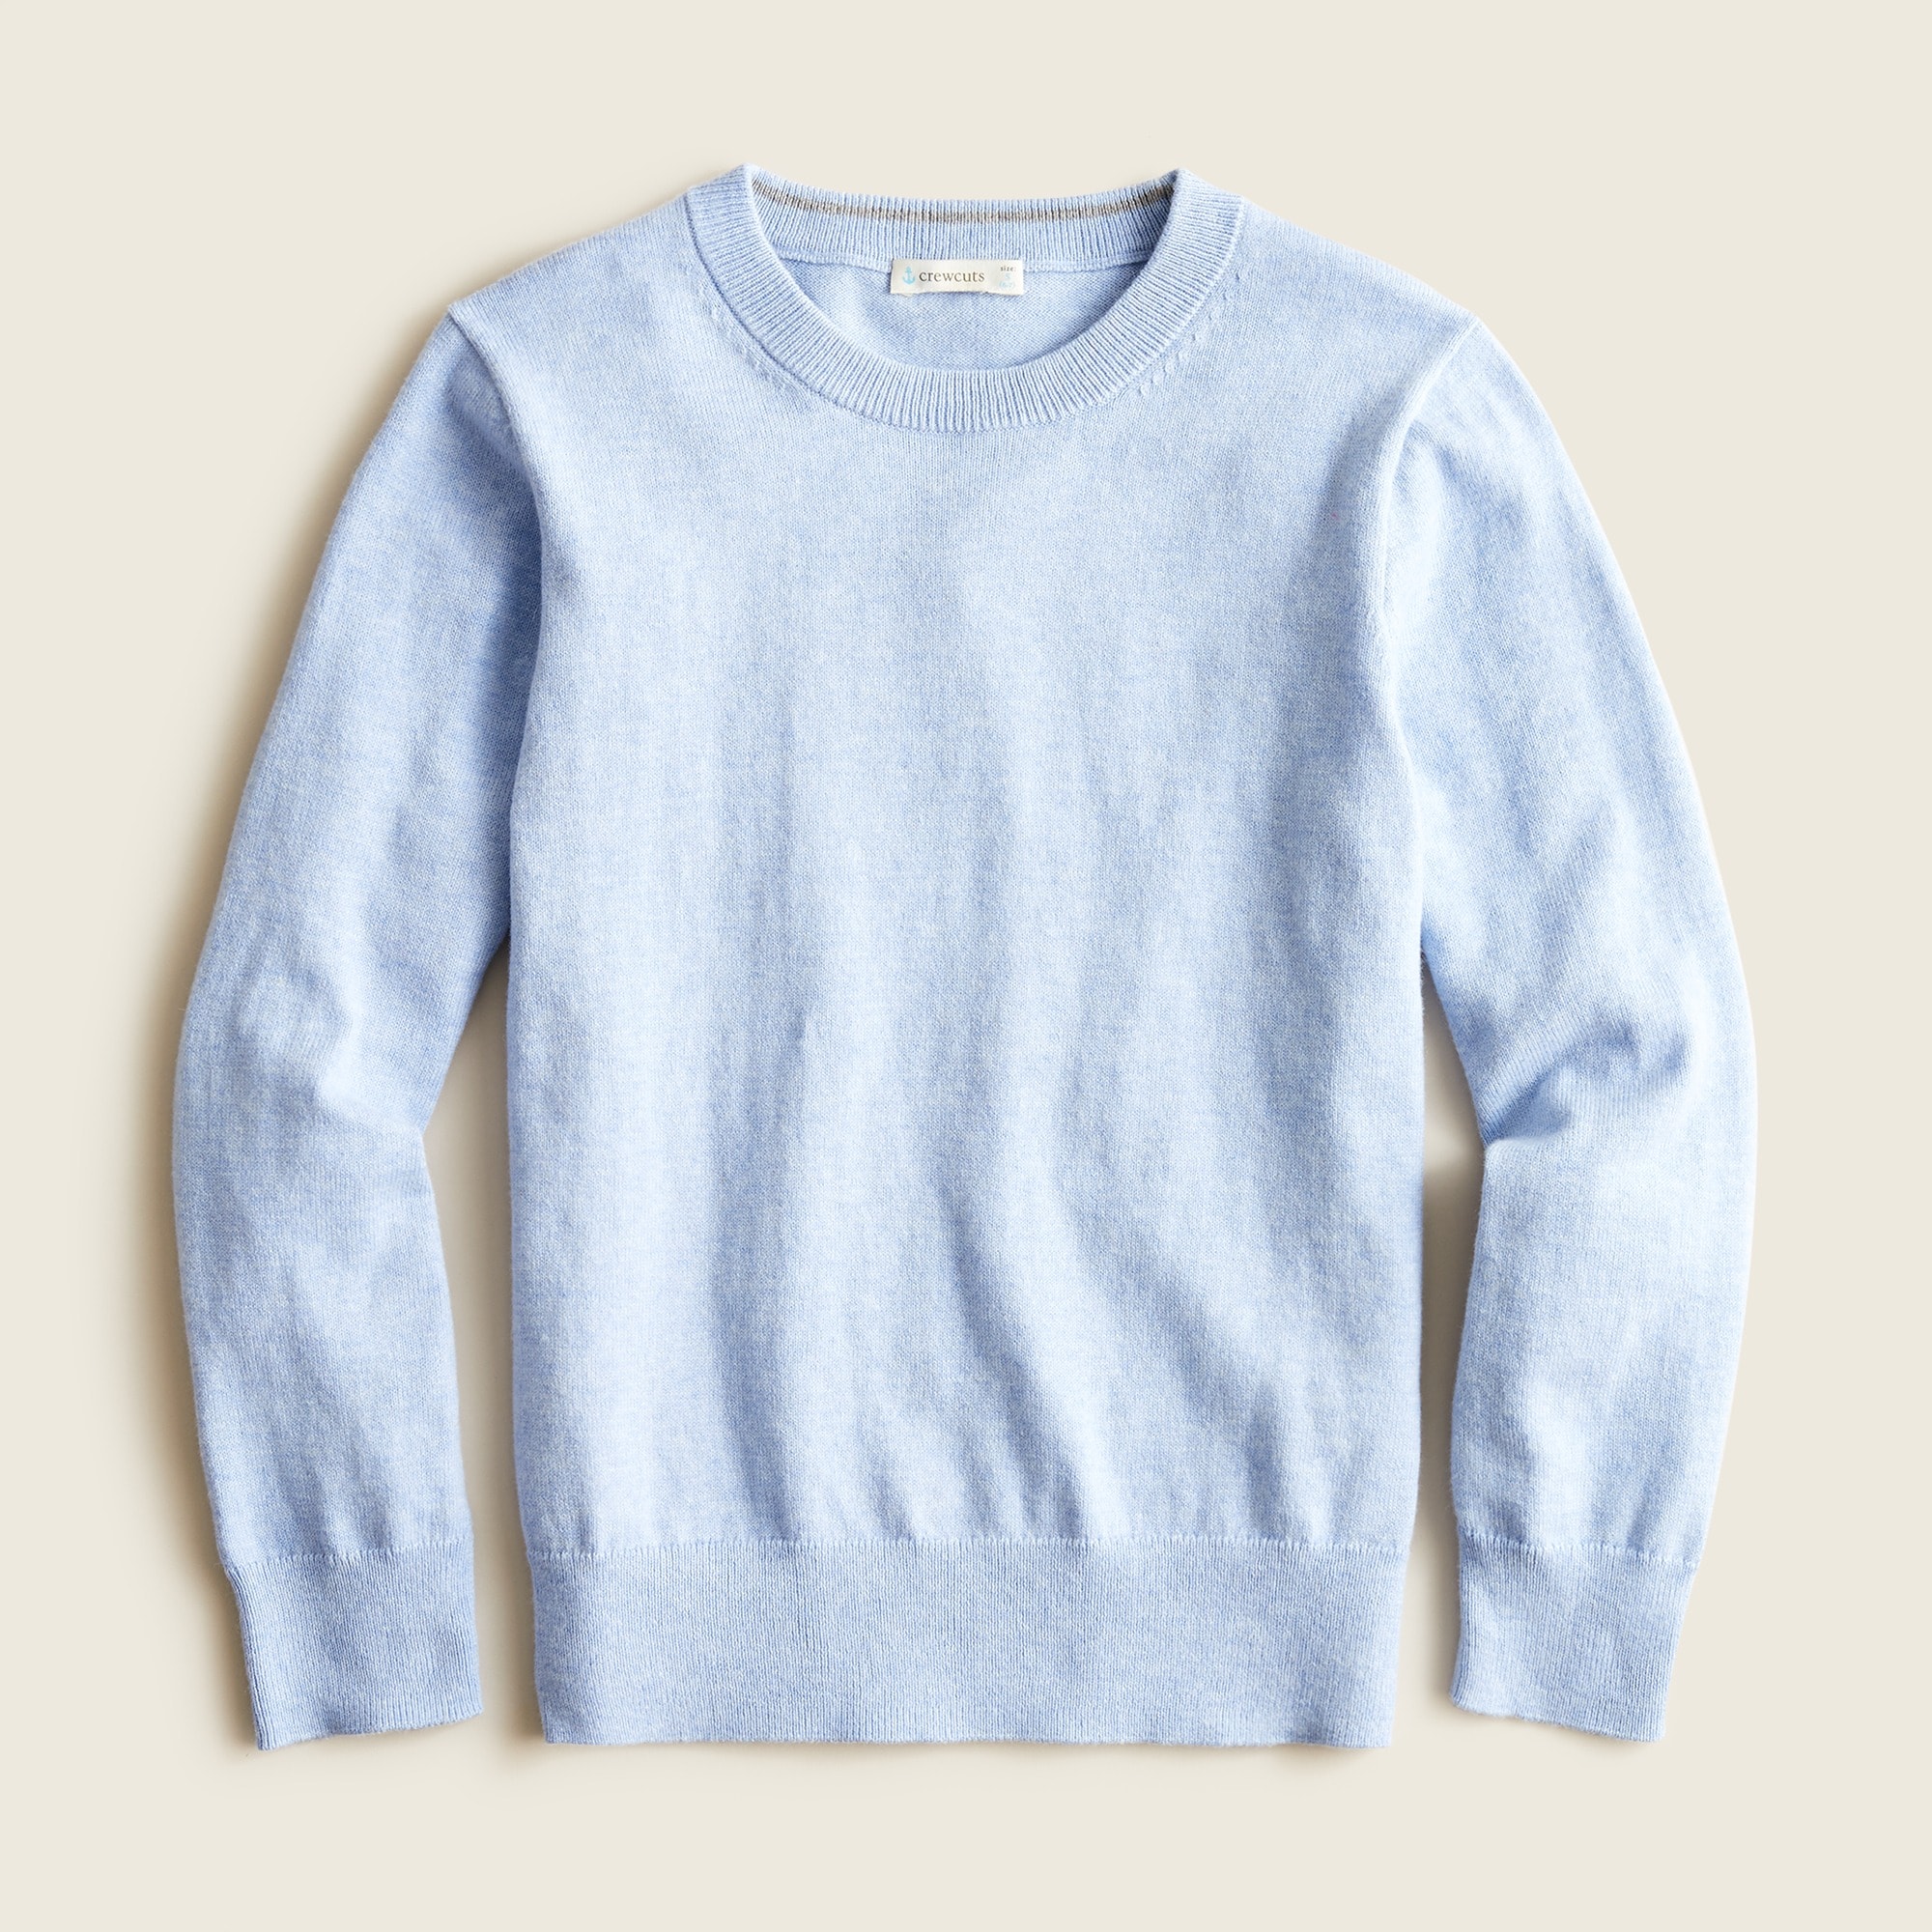 제이크루 보이즈 스웨터 J.crew Boys cotton-cashmere crewneck sweater,HTHR SKY